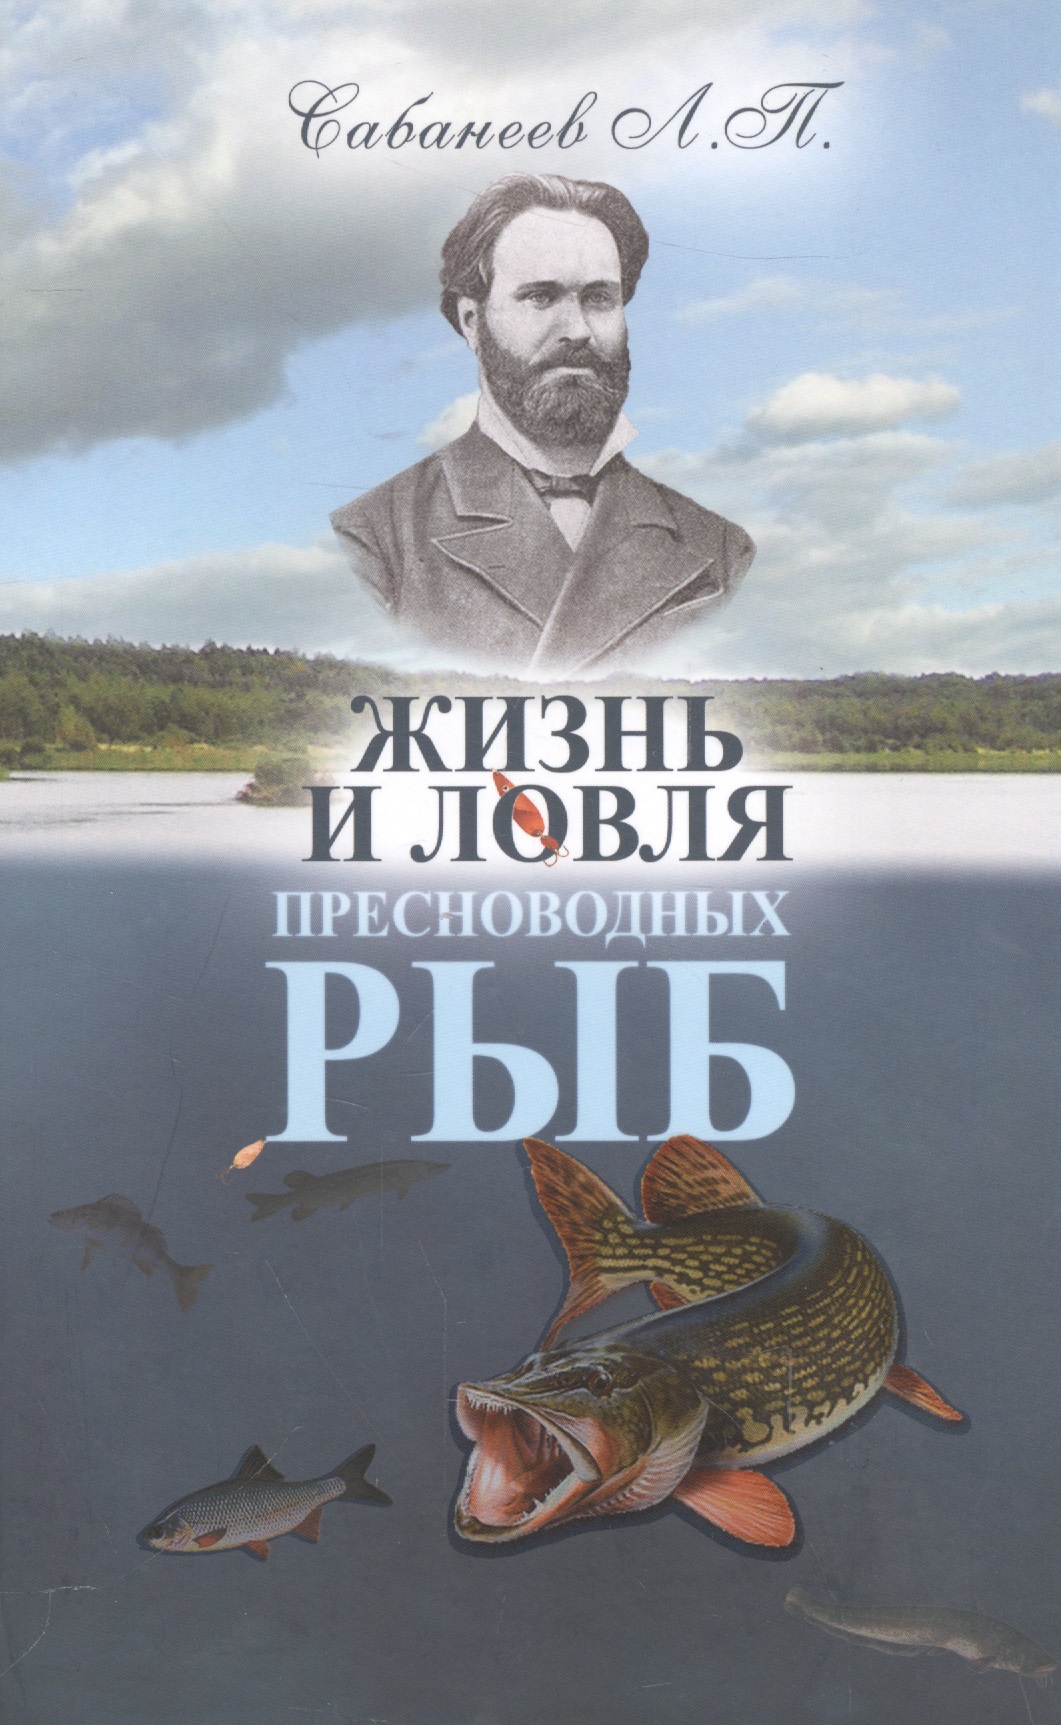 Сабанеев Леонид Павлович - Жизнь и ловля пресноводных рыб